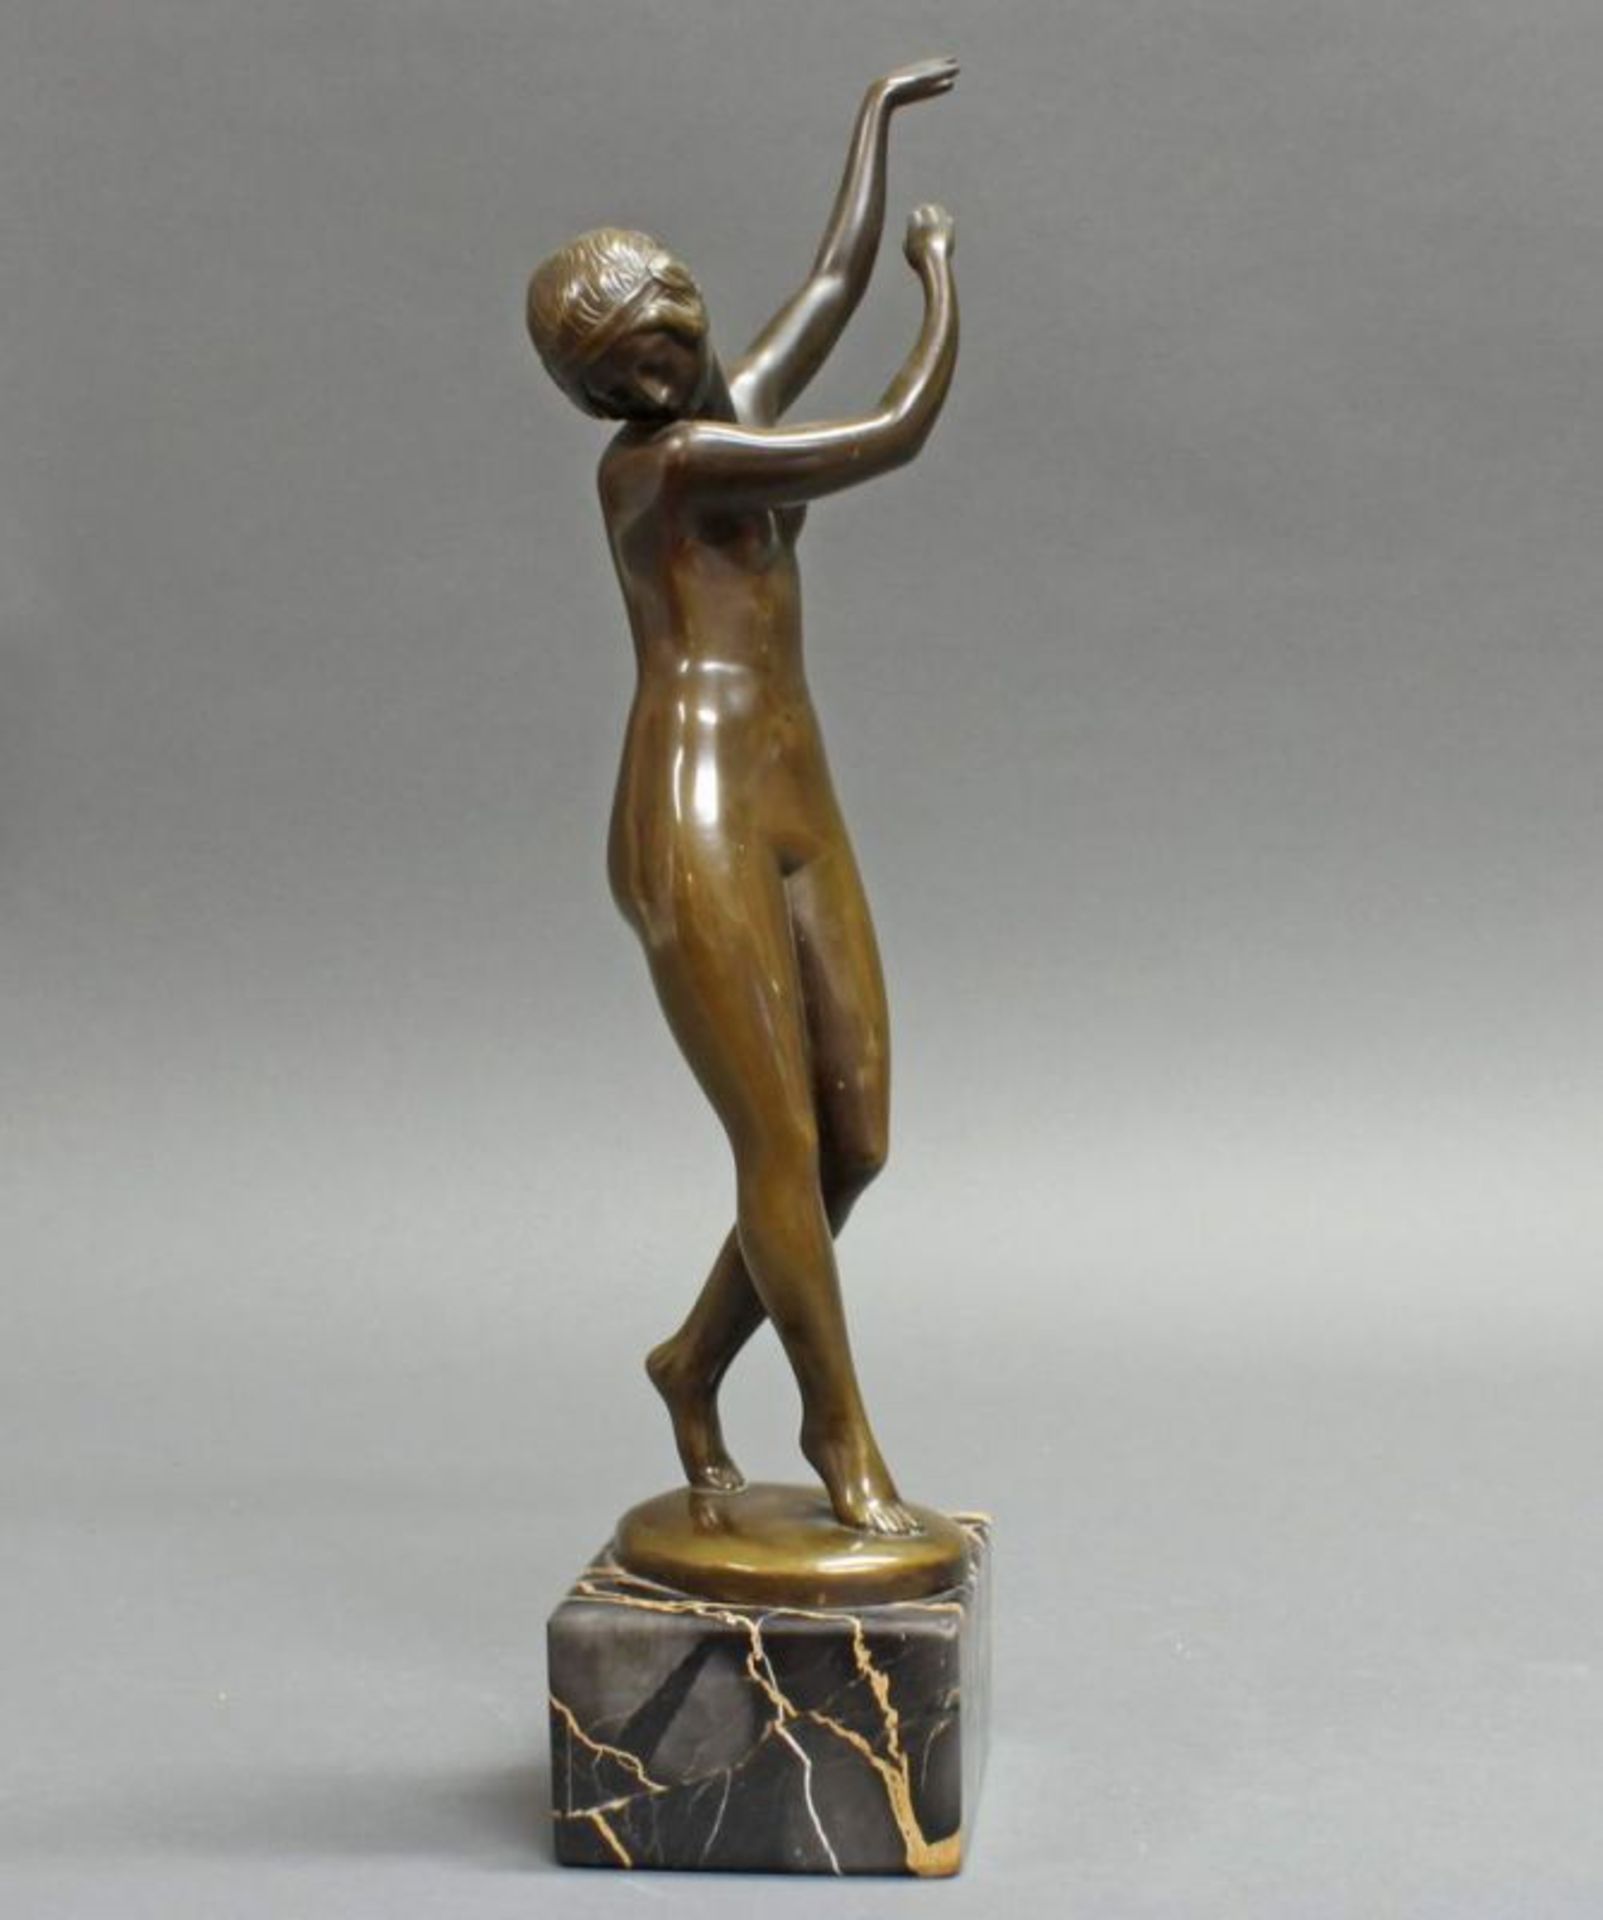 Bronze, braun patiniert, "Tänzerin", auf der Plinthe bezeichnet Lissy Eckart, auf Steinsockel, 32 cm